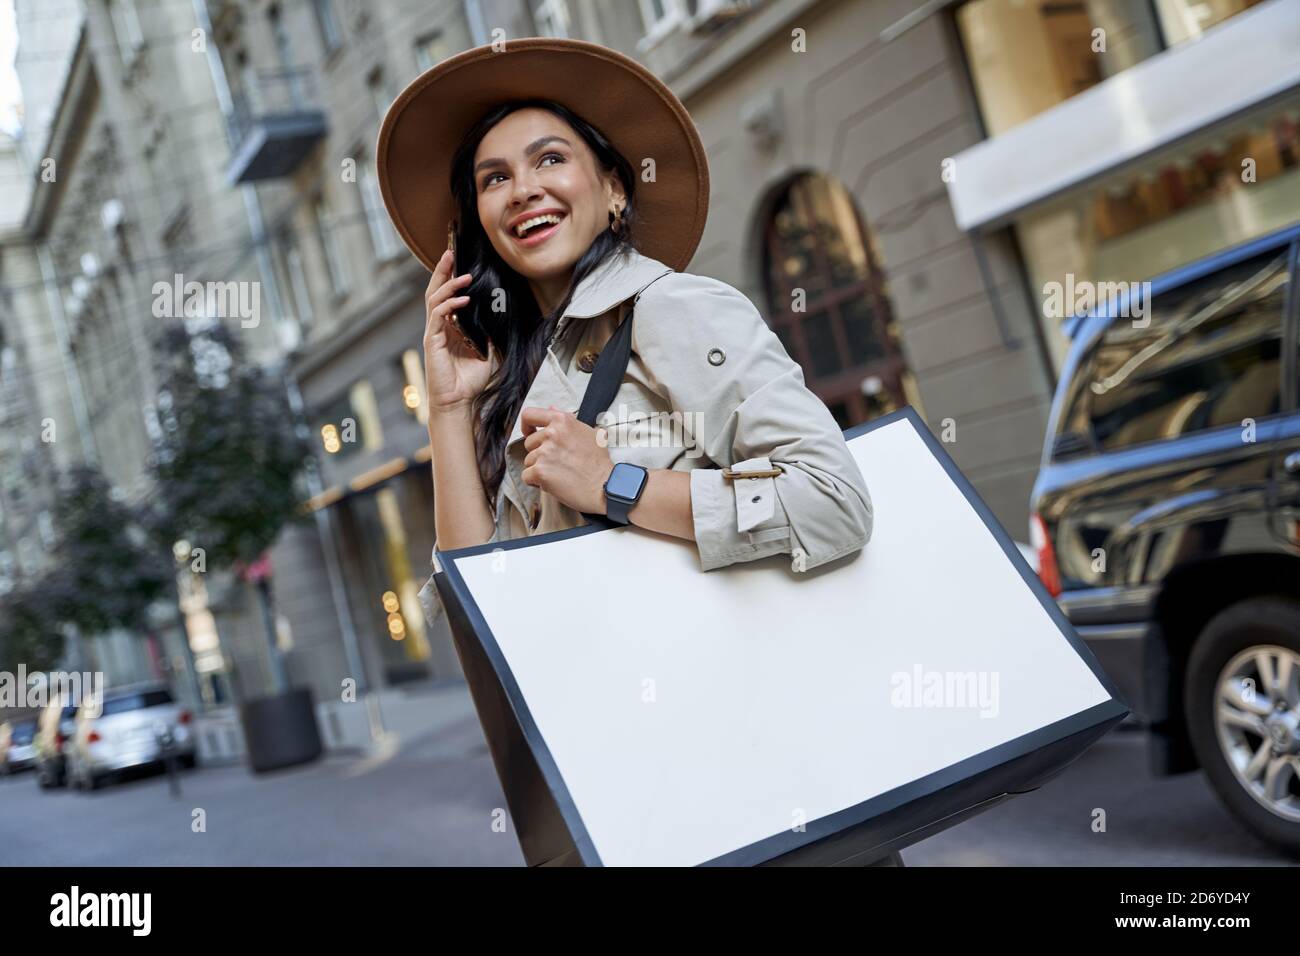 Einkaufen macht uns glücklich. Junge schöne aufgeregt Frau in Hut mit Einkaufstasche reden auf dem Smartphone, Blick zur Seite und lächeln, während Sie auf den Straßen der Stadt. Mode, Menschen Lifestyle-Konzept Stockfoto